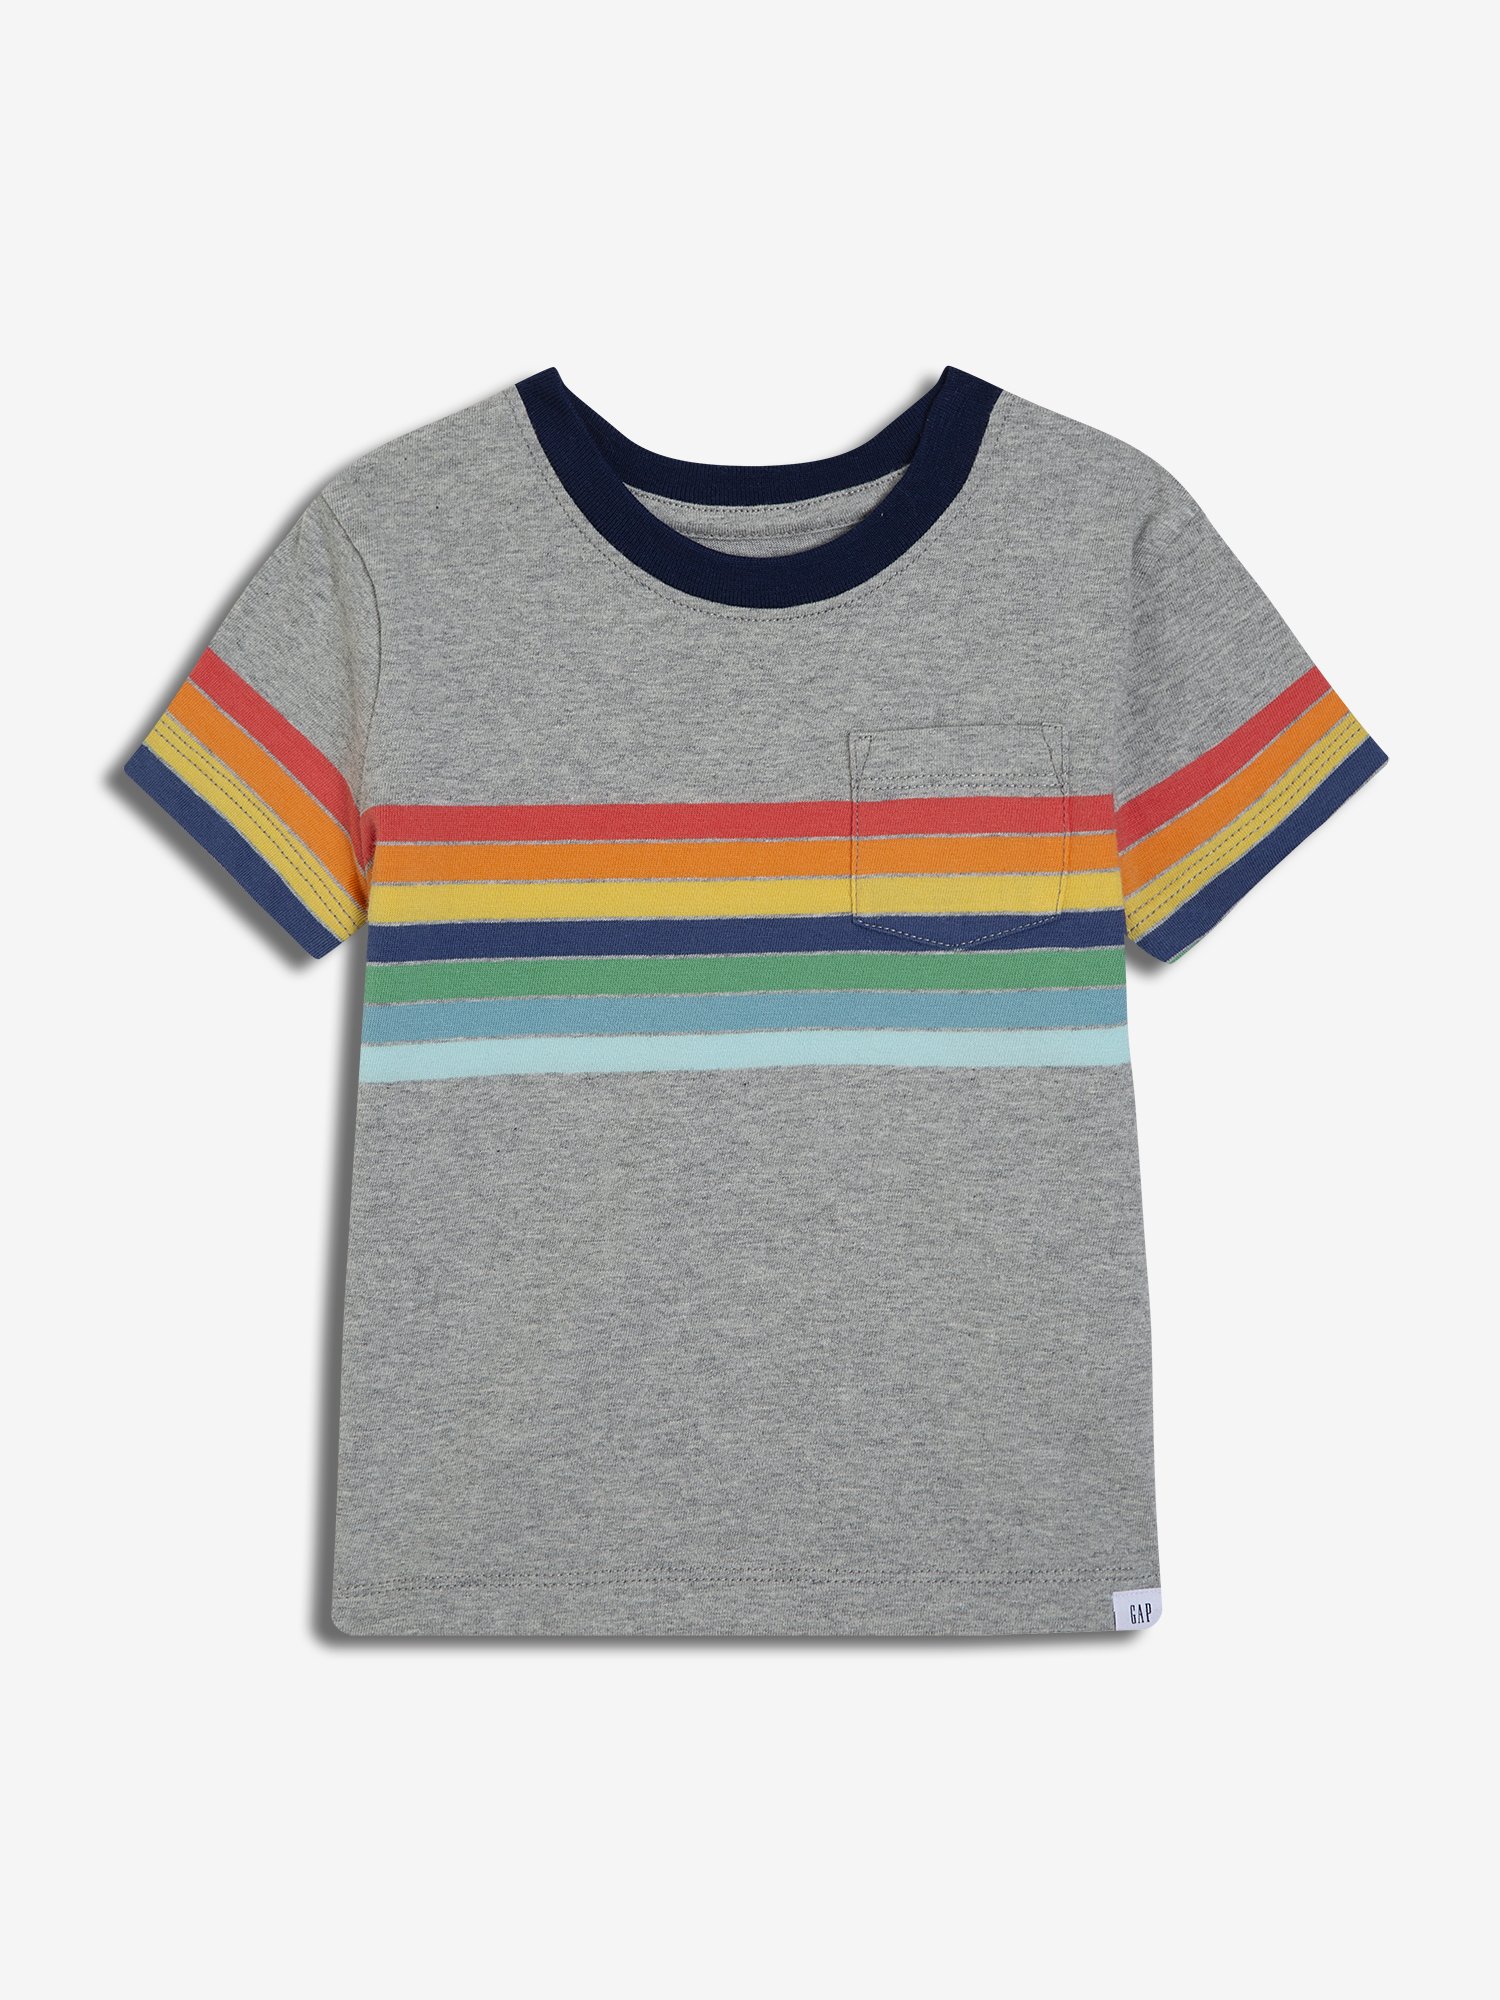 Erkek Bebek Kısa Kollu T-Shirt product image